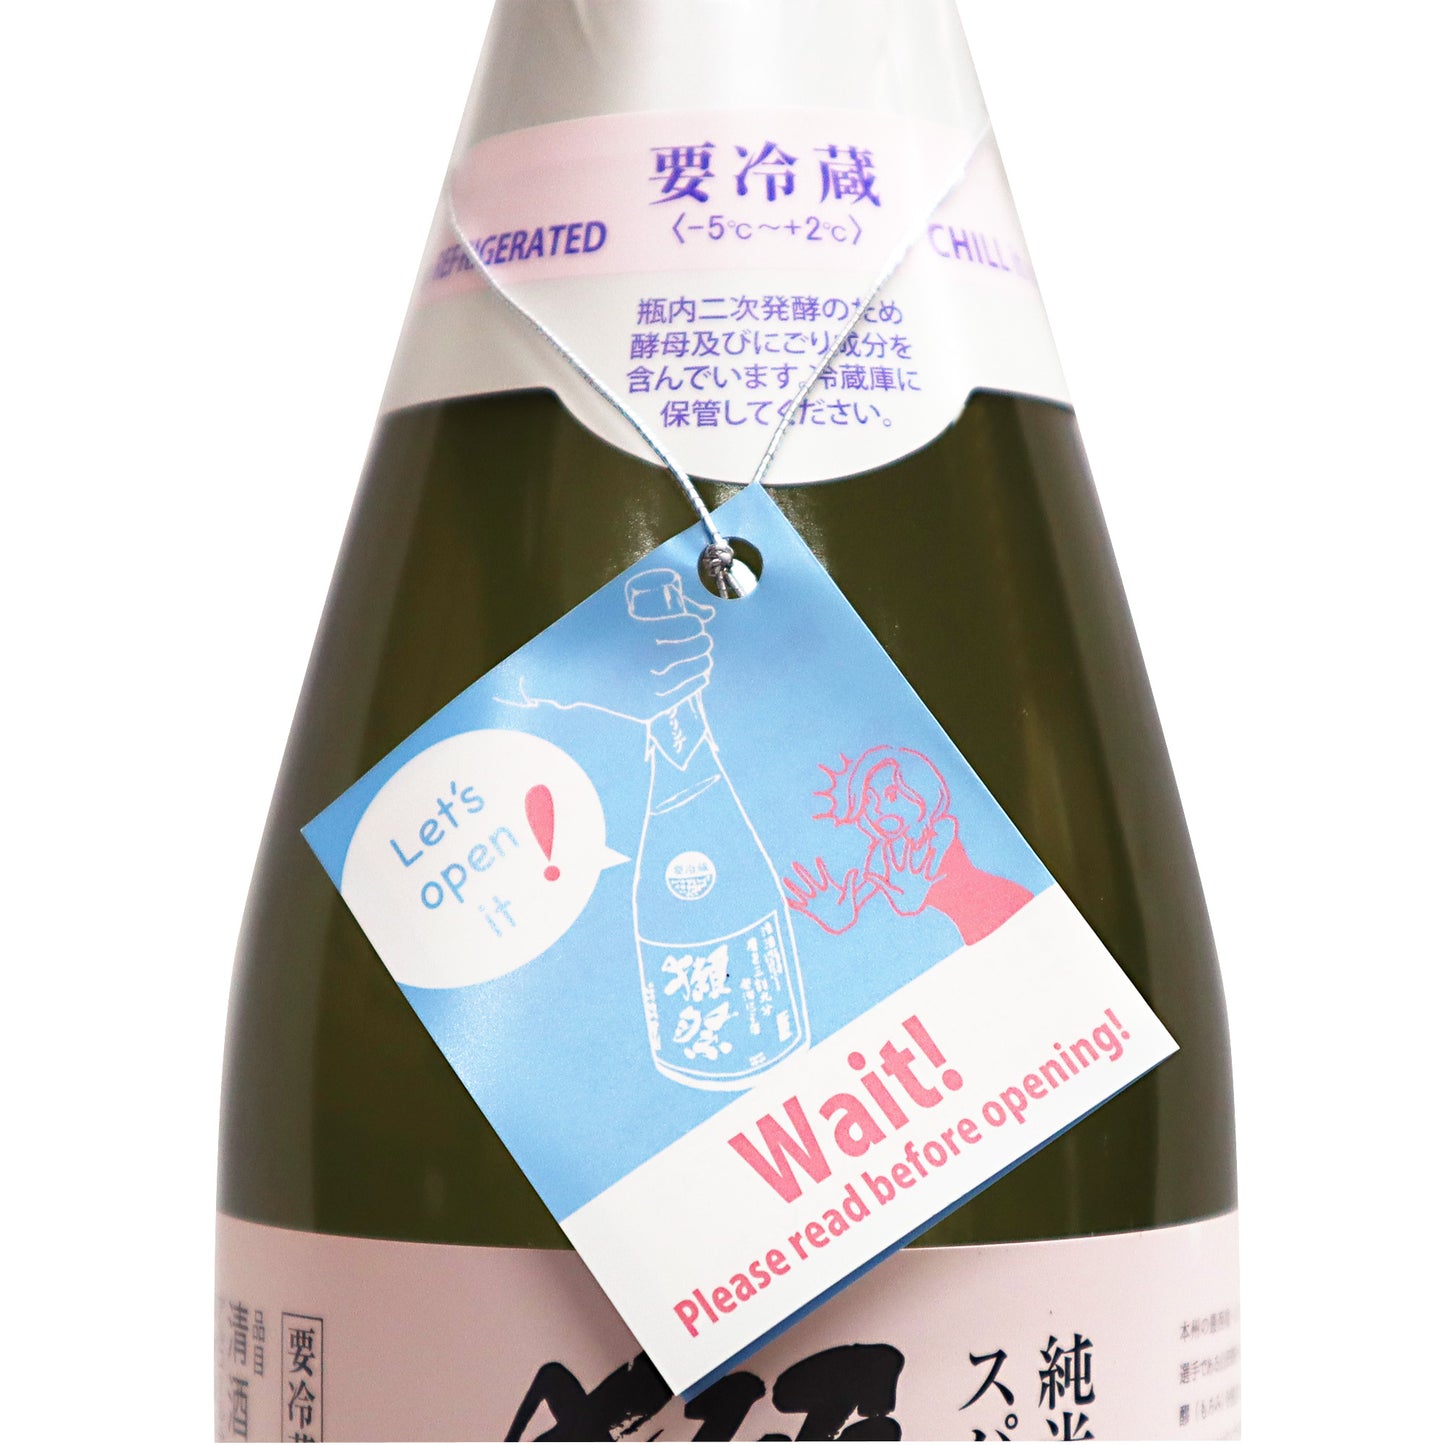 【獺祭】 純米大吟醸 スパークリング45 720ml/旭酒造